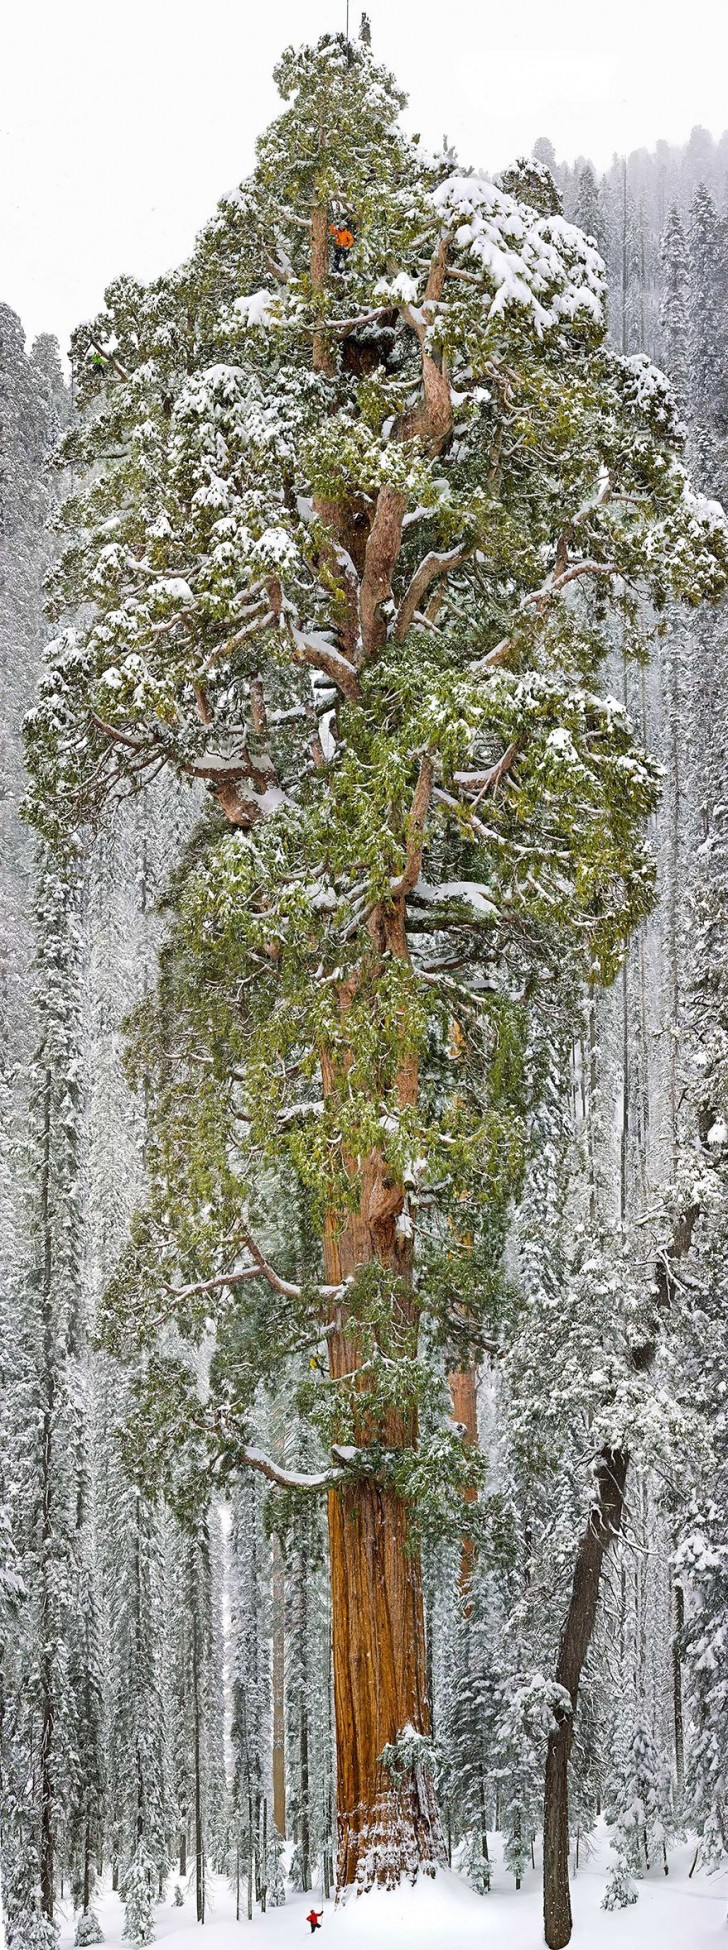 De op drie na grootste mammoetboom staat in het Sequoya National Park in Californië. De boom is 73 meter hoog en heeft een omtrek van 28 meter.